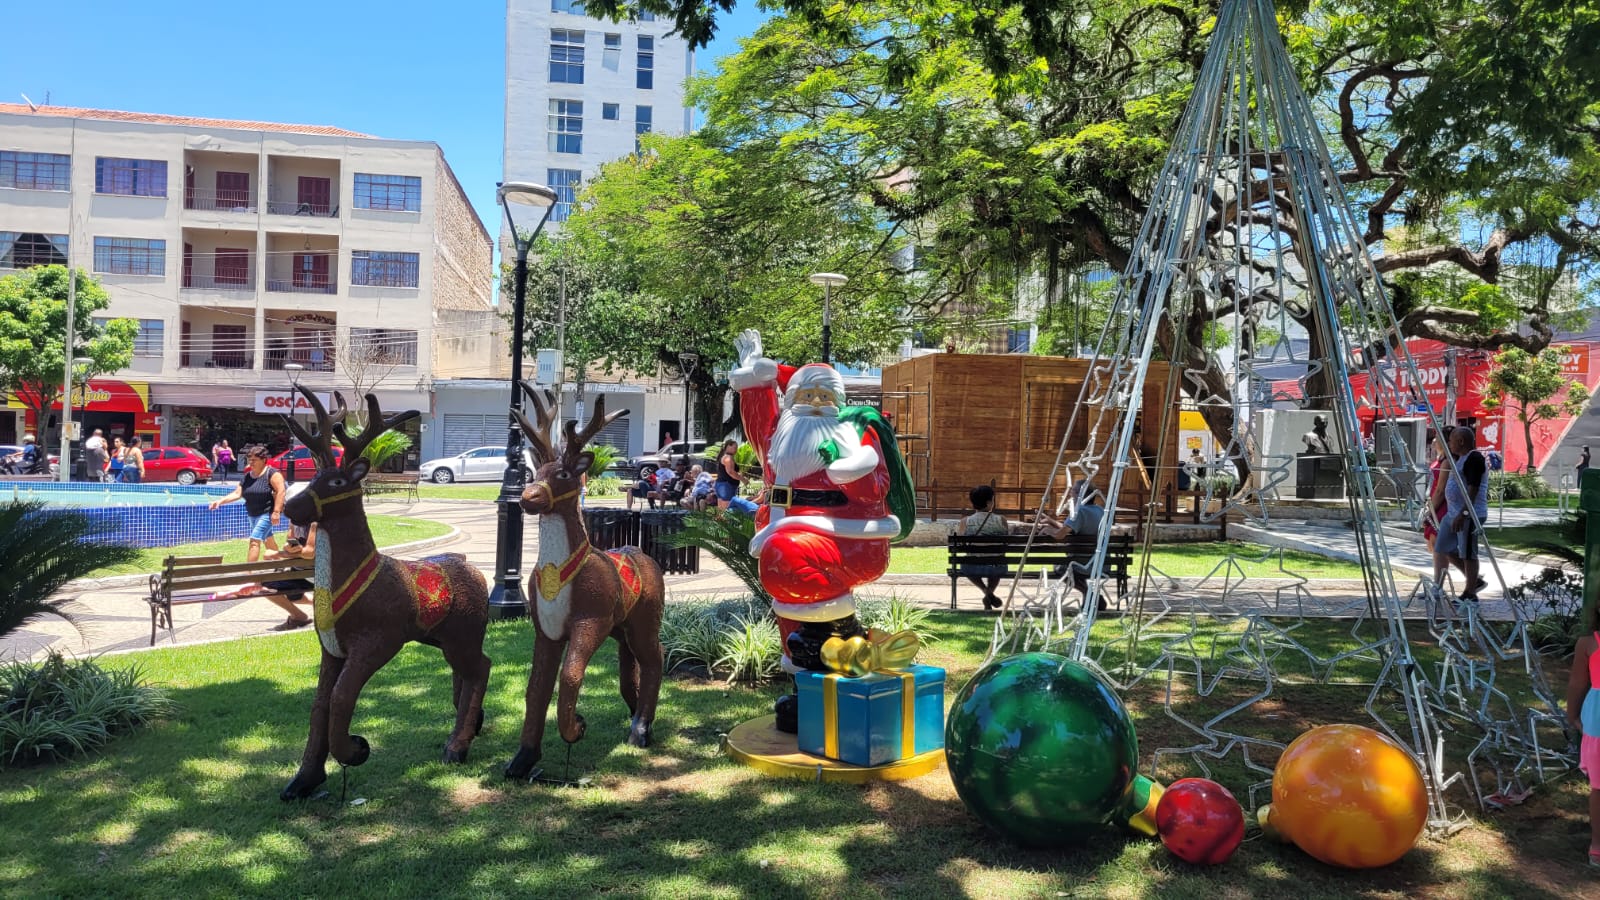 09/11 - Prefeitura de Pindamonhangaba inicia instalação de decoração natalina